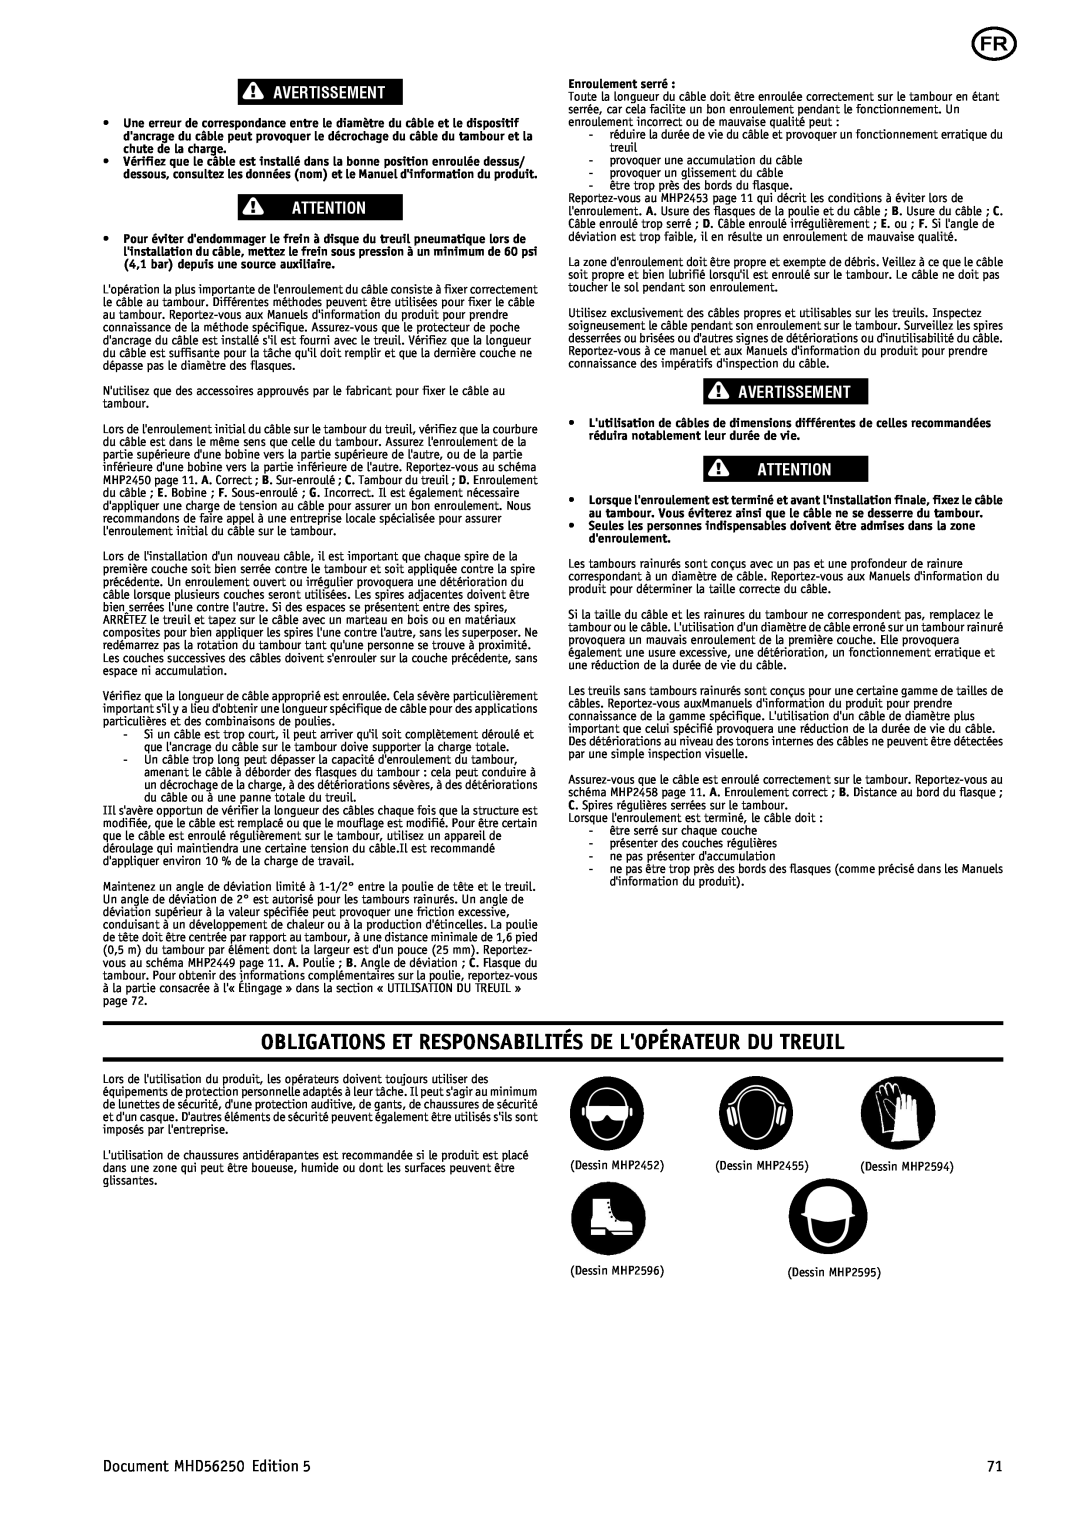 Ingersoll-Rand manual Obligations Et Responsabilités De Lopérateur Du Treuil, Avertissement, Document MHD56250 Edition 